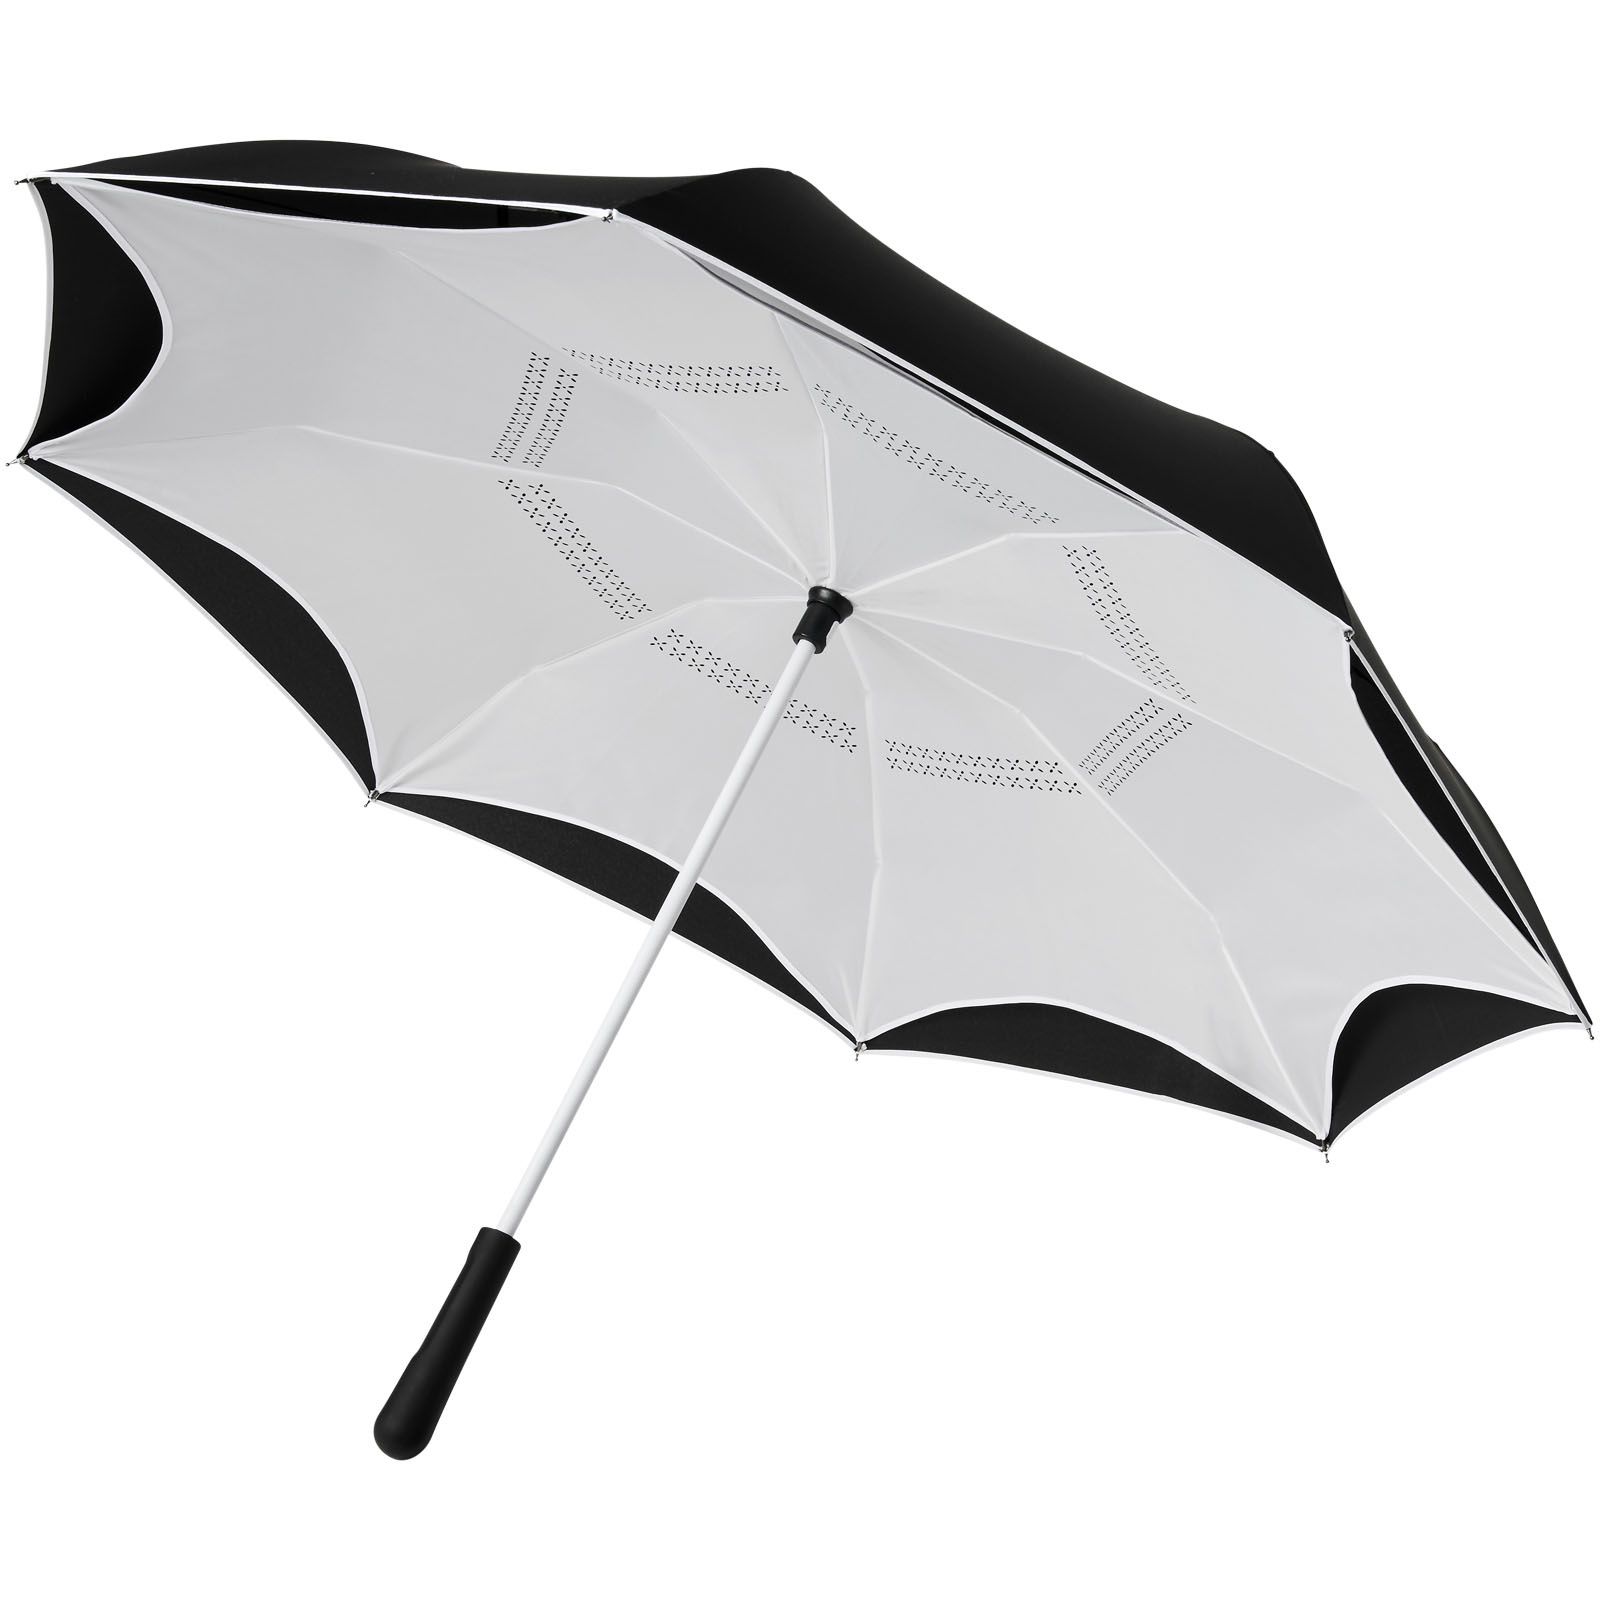 Innovativer umgekehrter faltbarer Regenschirm